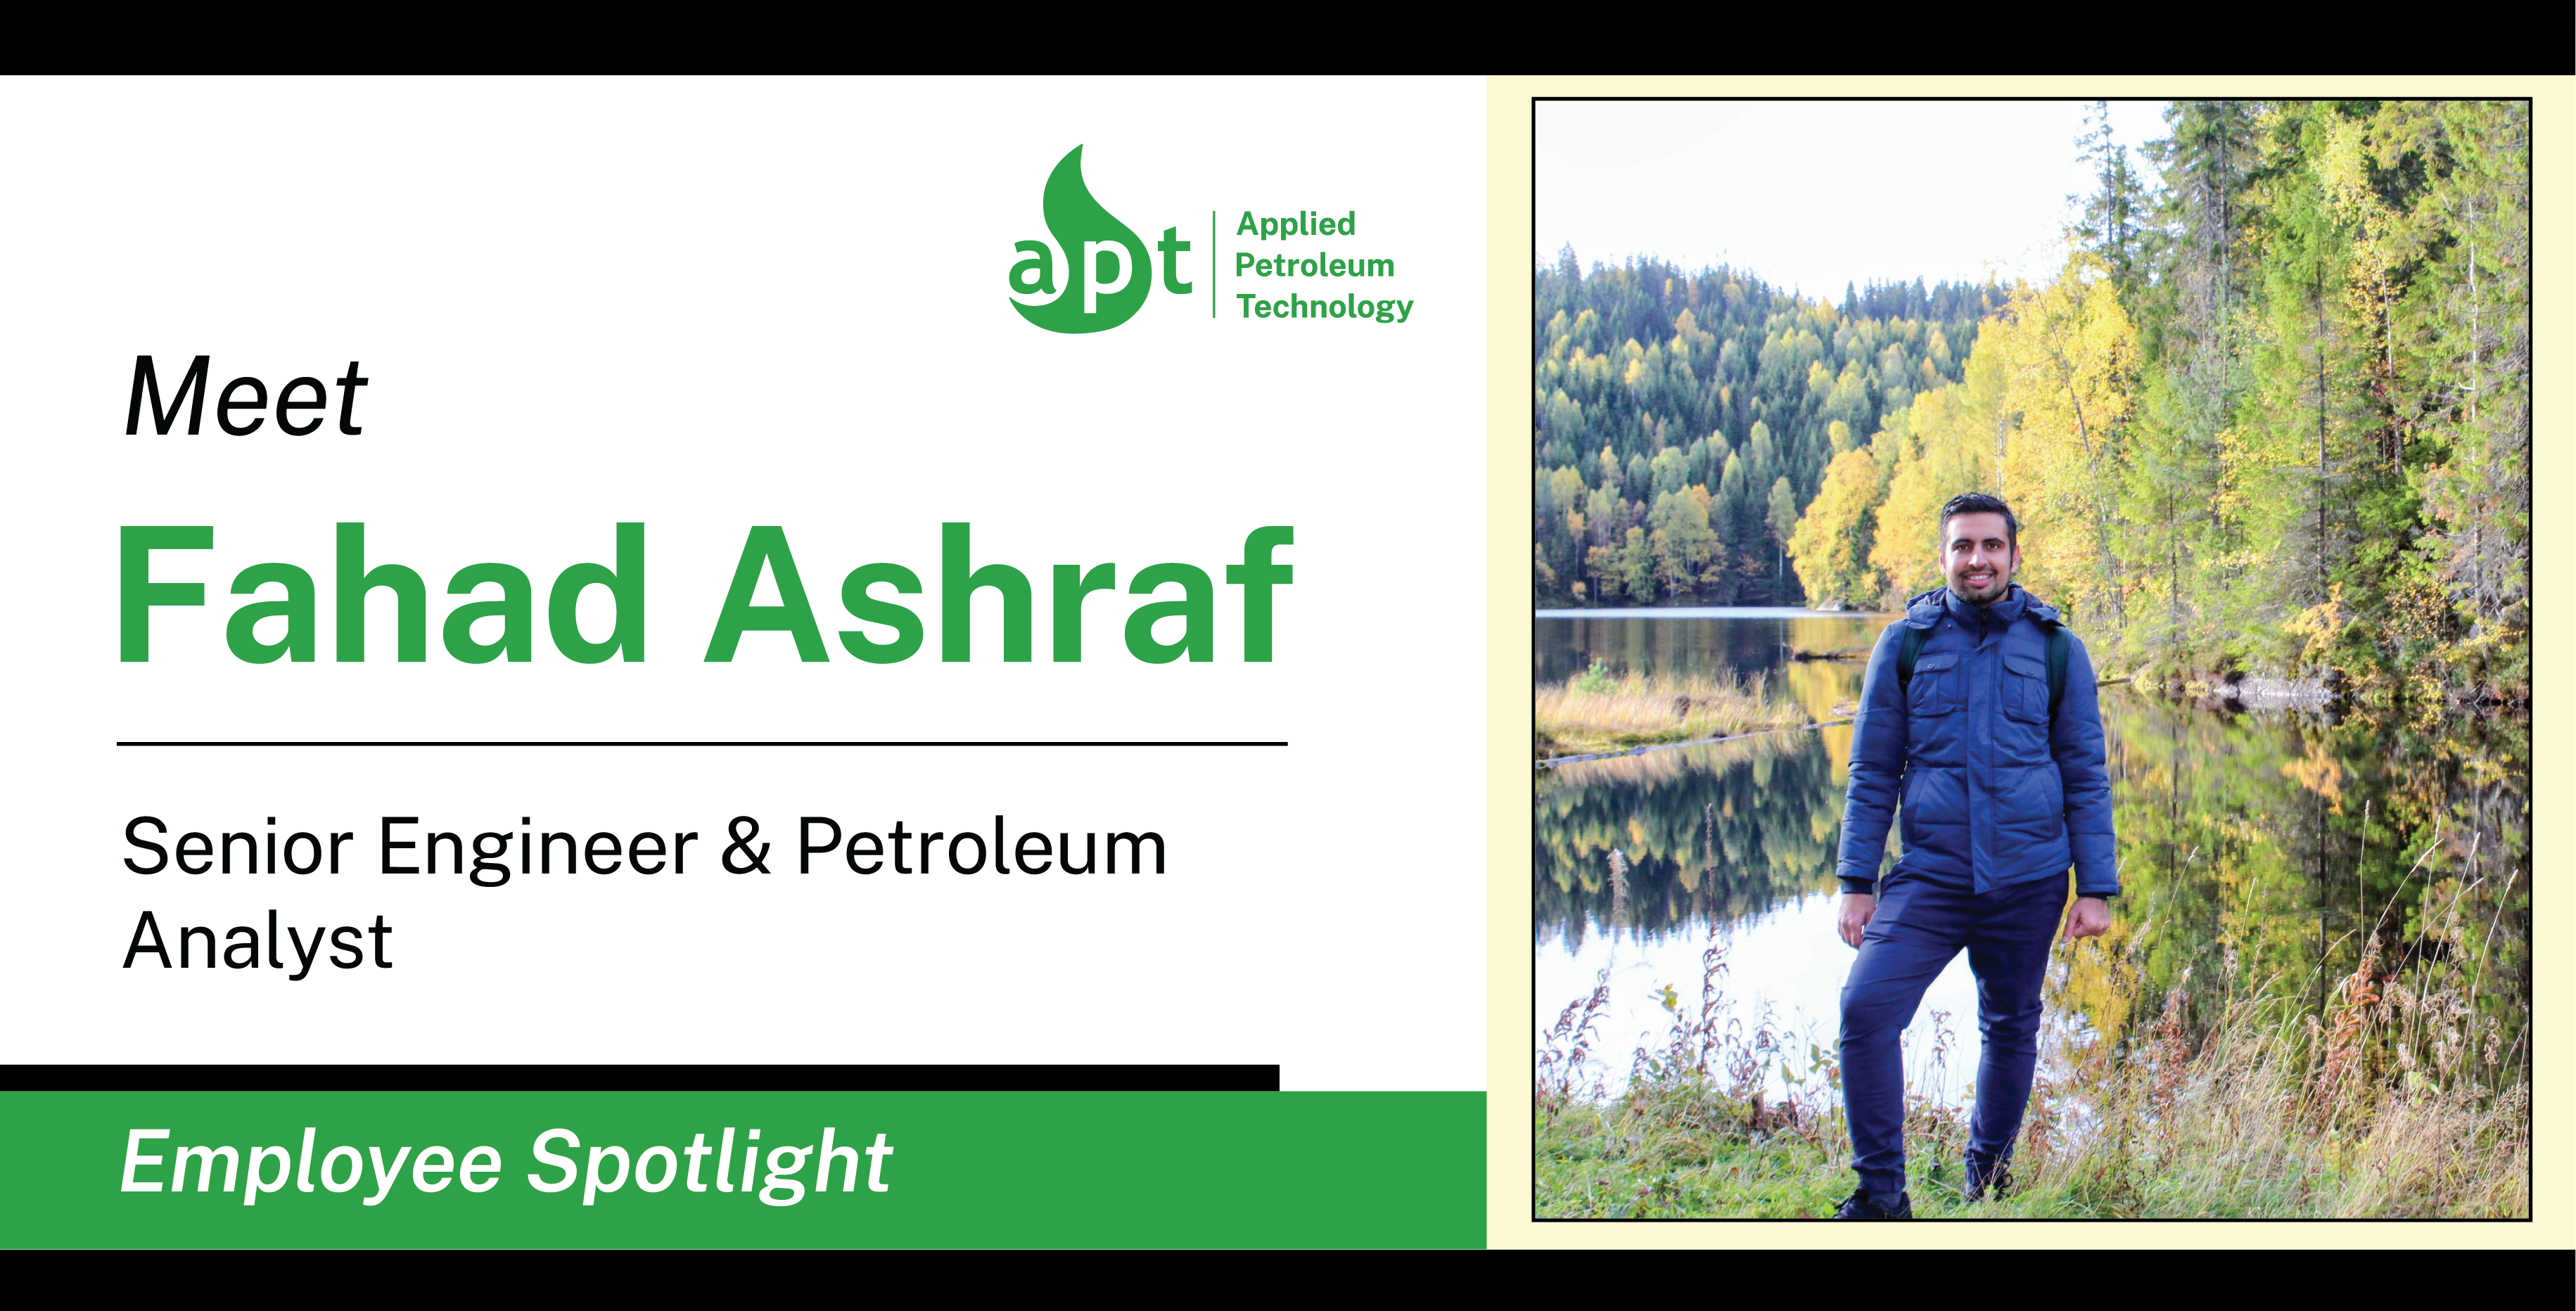 Meet Fahad Ashraf Senior Engineer & Petroleum Analyst at APT